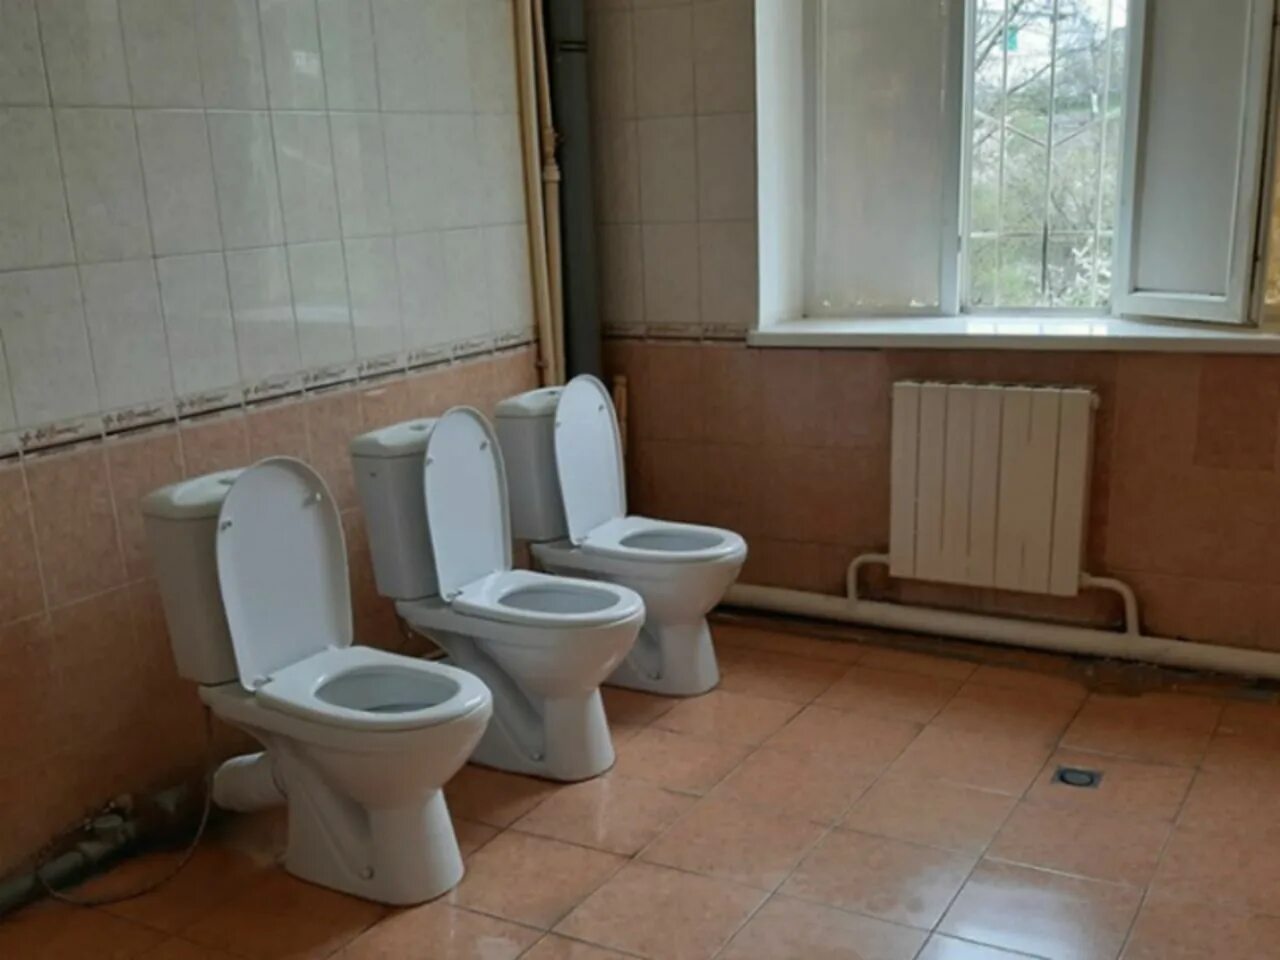 Унитаз в школе. Туалетная комната в школе. Унитазы в школьных учреждениях. Советские унитазы в школе. Смотря туалет школа